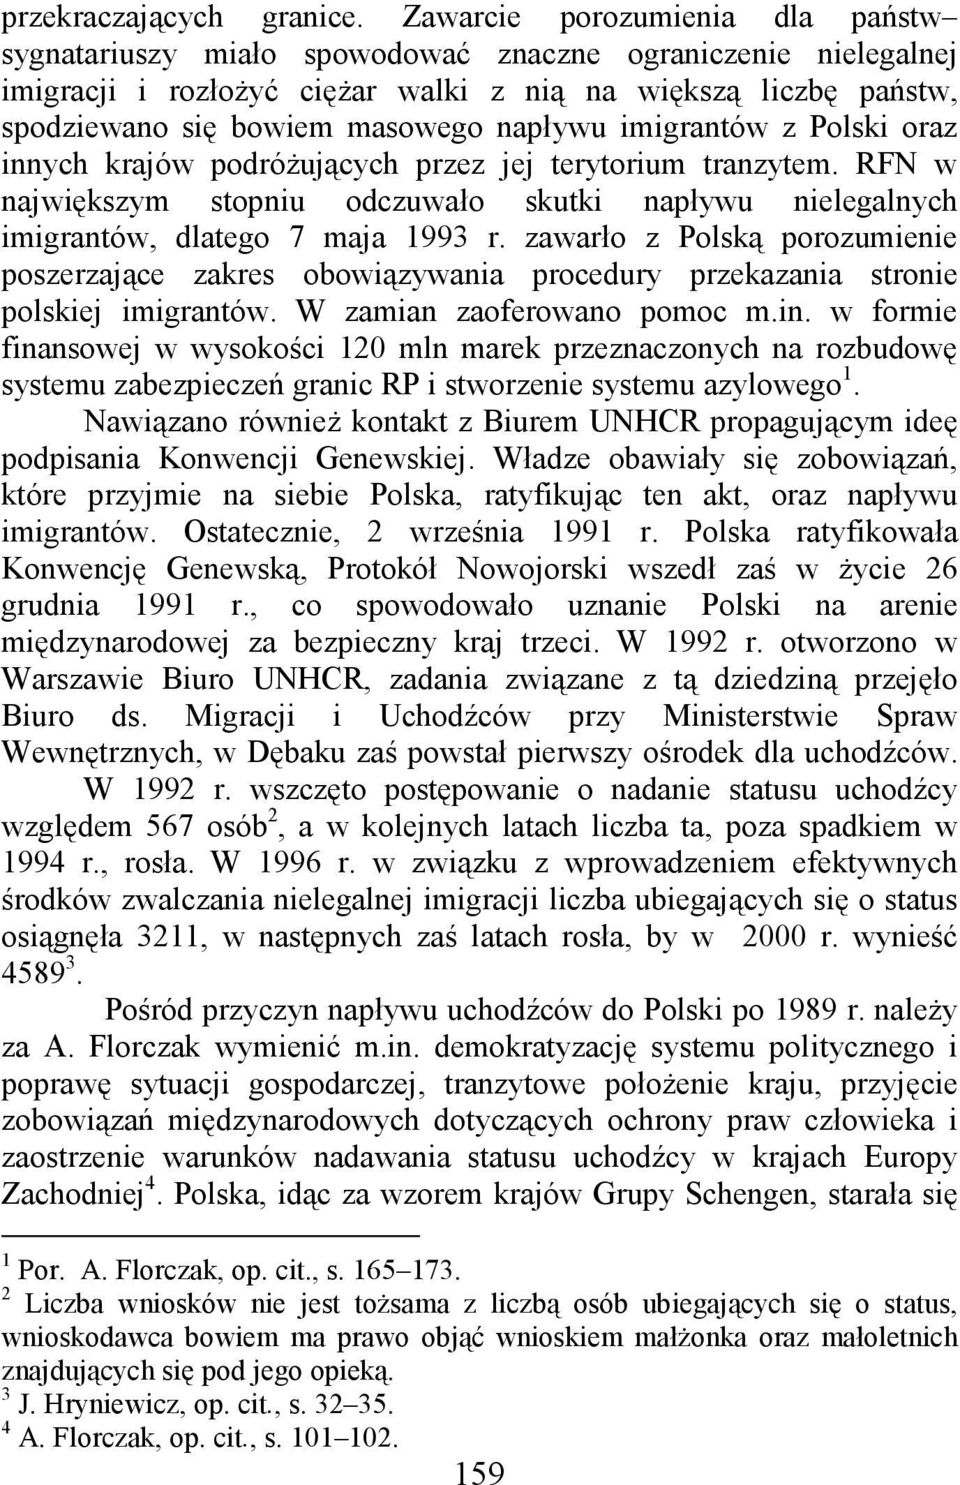 napływu imigrantów z Polski oraz innych krajów podróŝujących przez jej terytorium tranzytem. RFN w największym stopniu odczuwało skutki napływu nielegalnych imigrantów, dlatego 7 maja 1993 r.